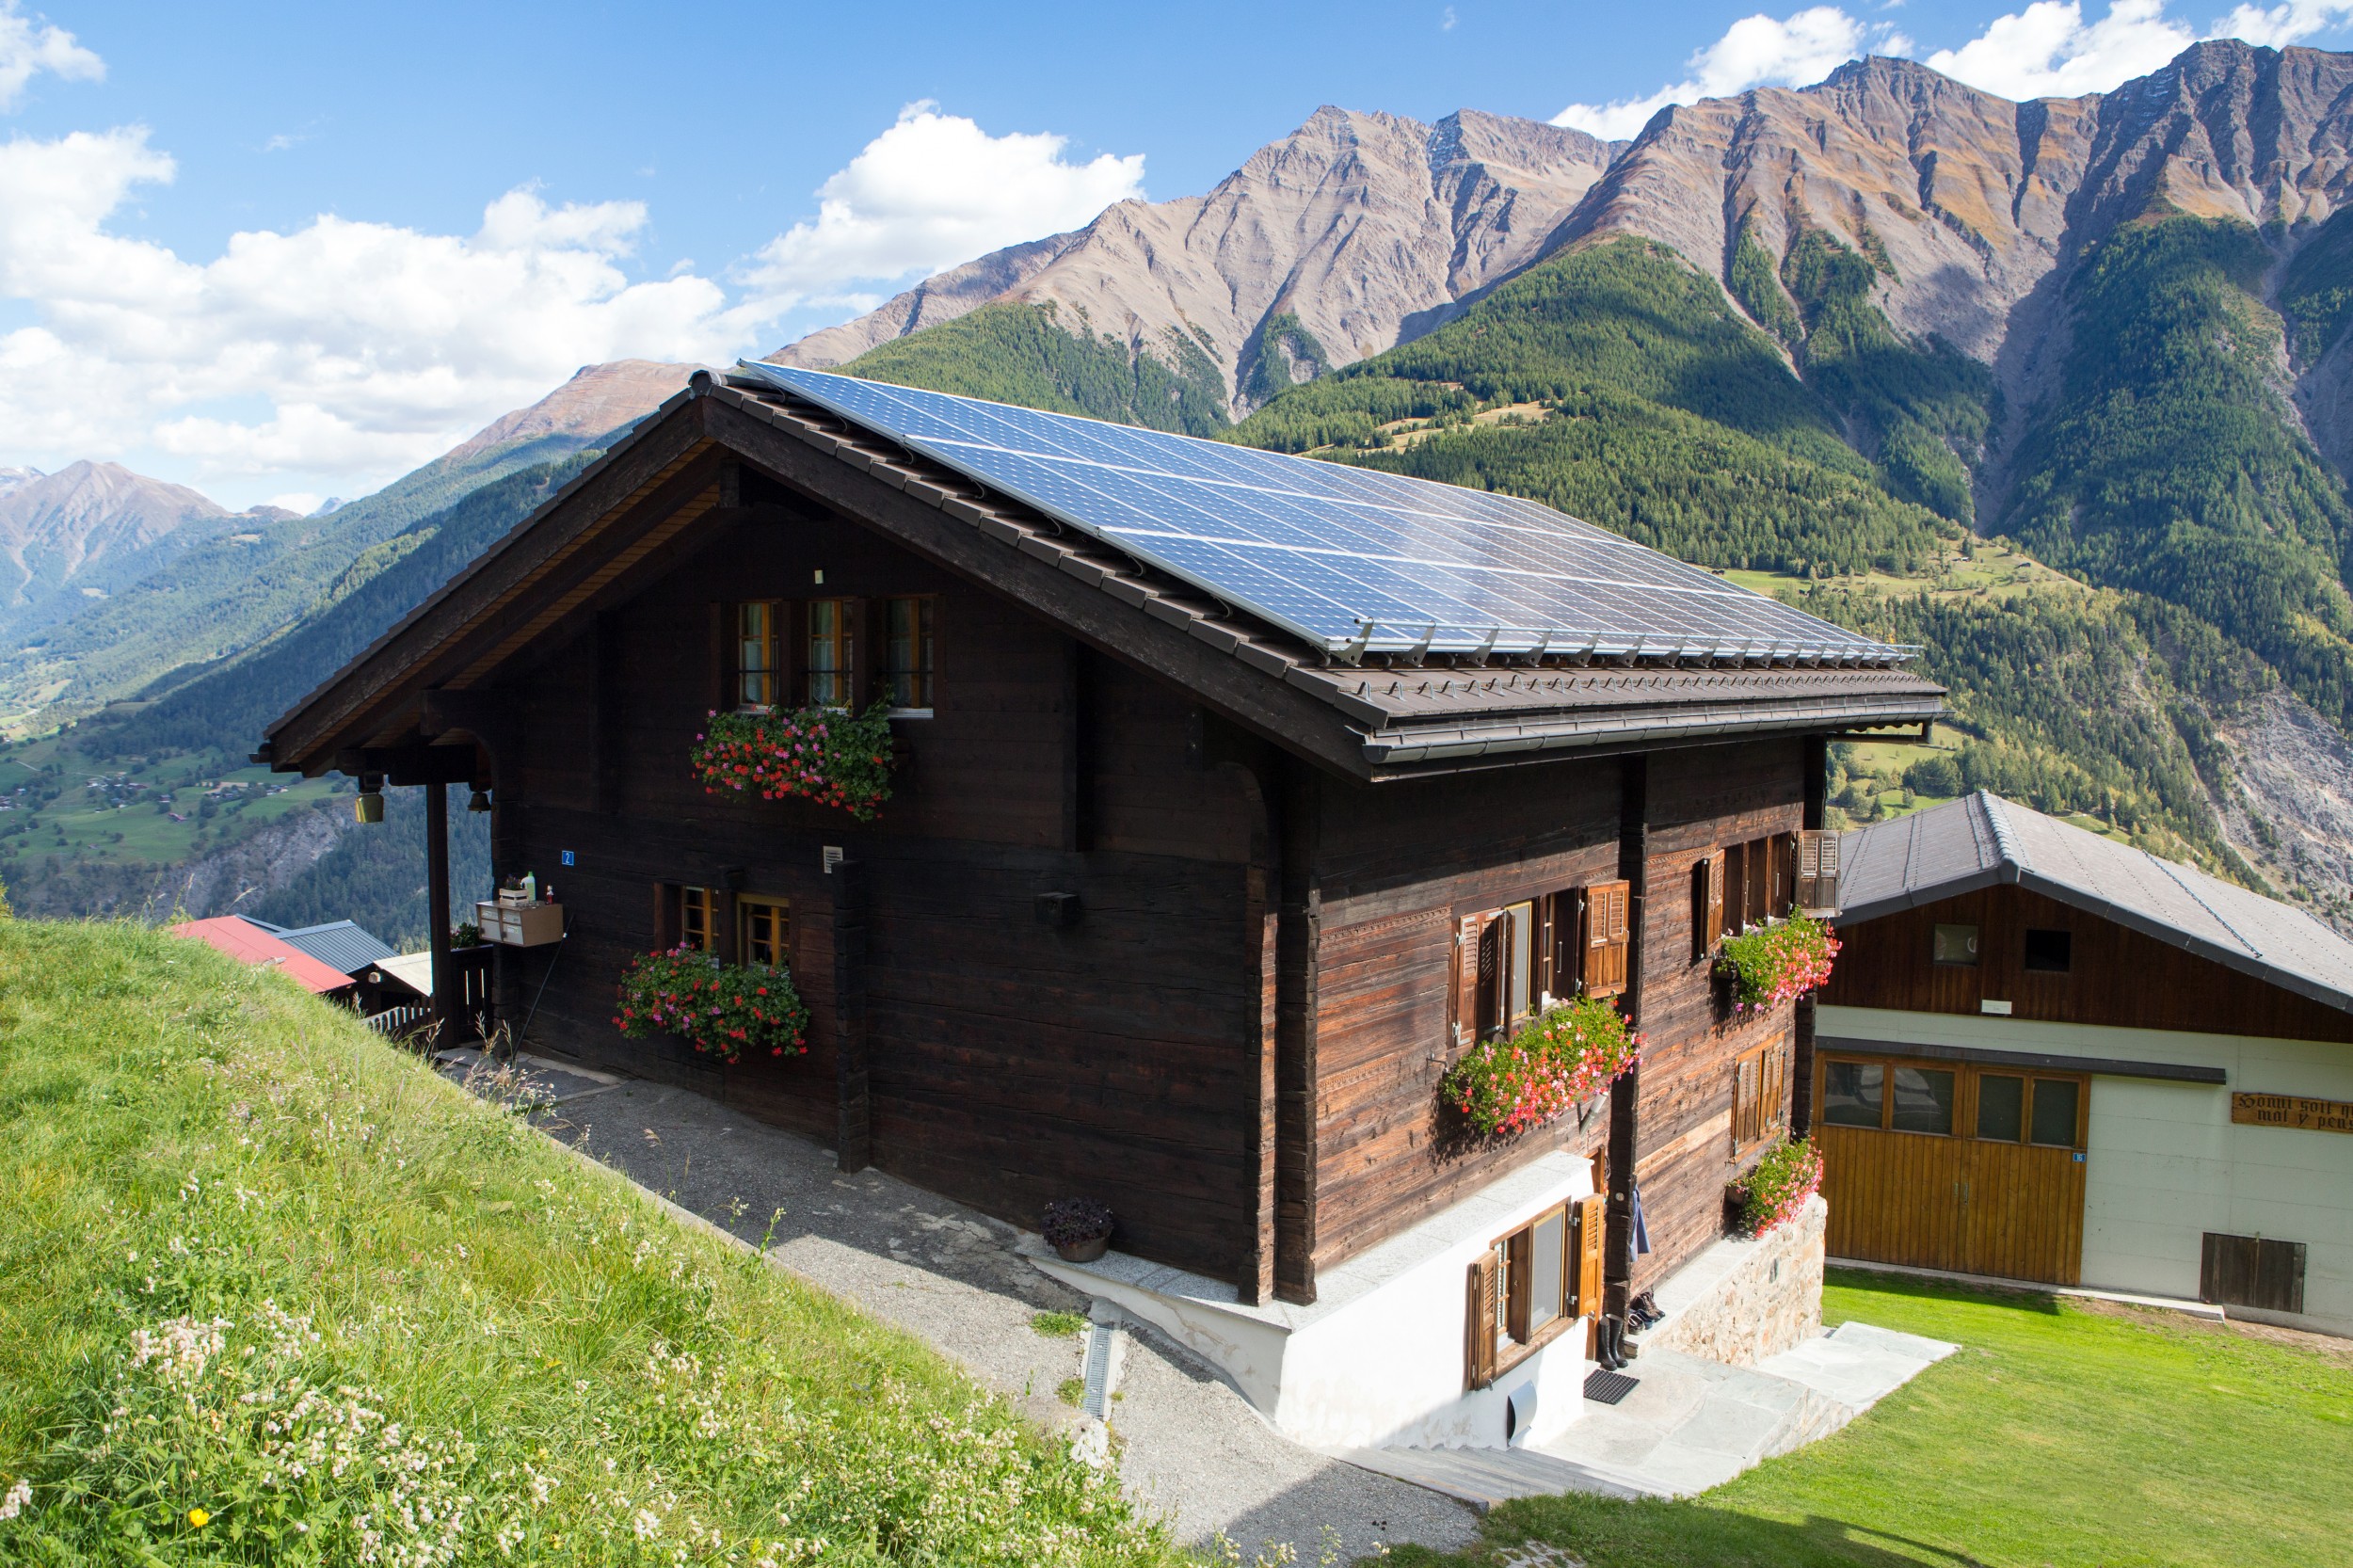 Die ideale Ergänzung für jedes Dach – dazu muss die Tandemsolarzelle aus Schweizer Forschung aber noch witterungsbeständiger werden.